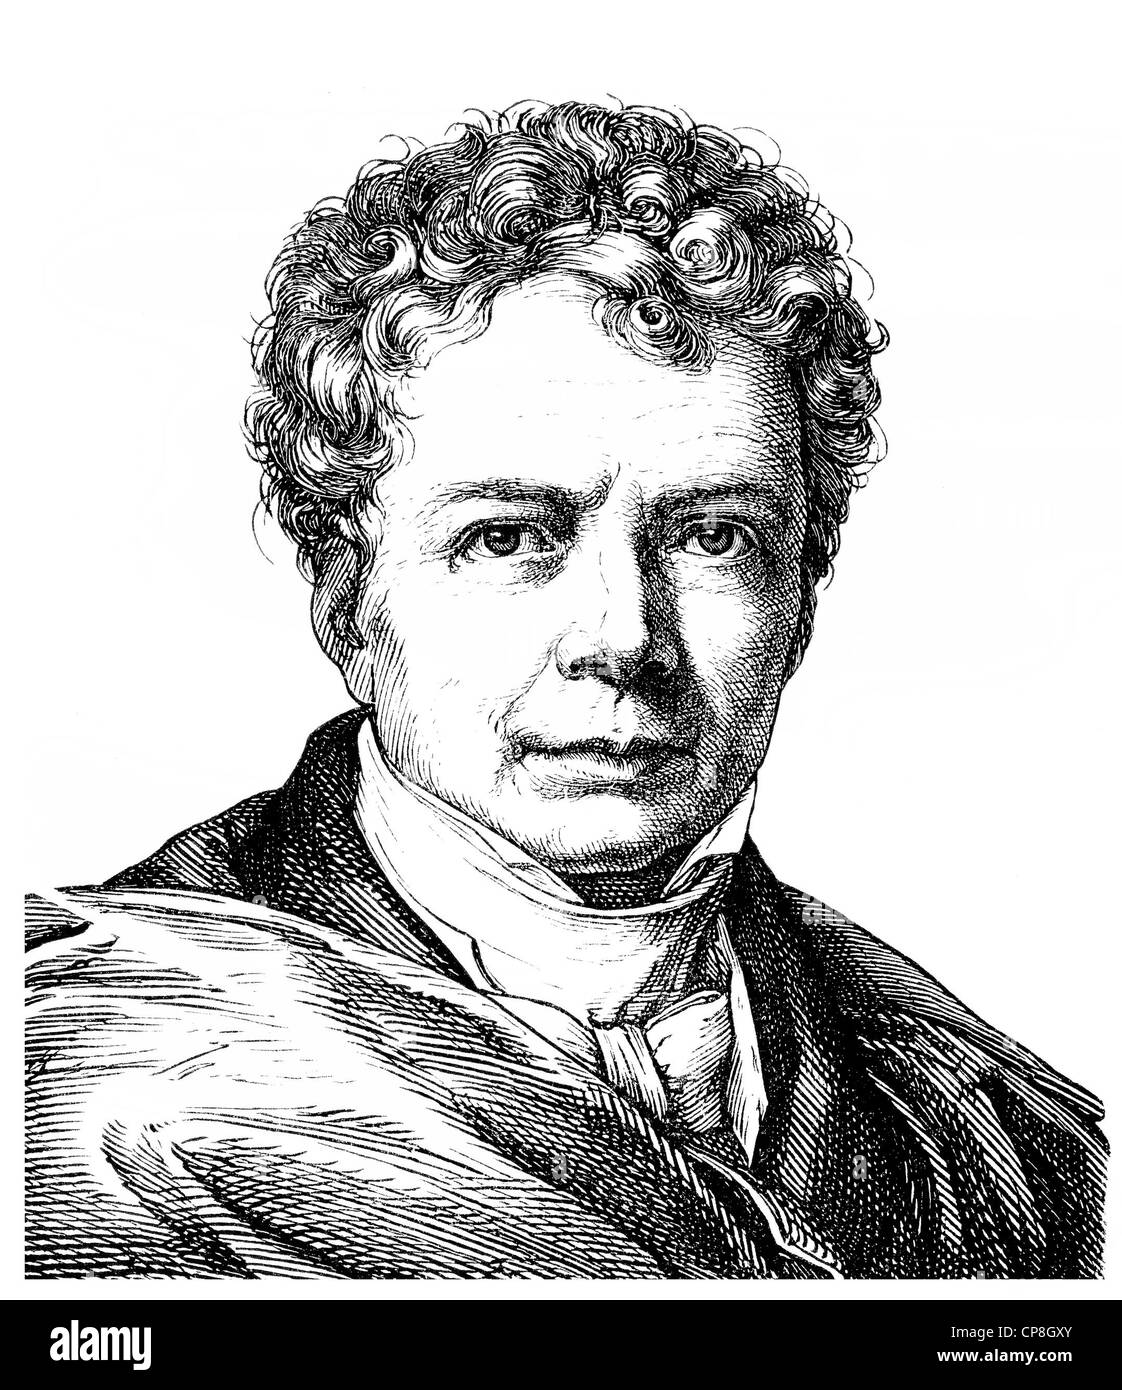 Friedrich Wilhelm Joseph Ritter von Schelling, 1775 - 1854, a German philosopher of German Idealism, Historische Zeichnung aus d Stock Photo